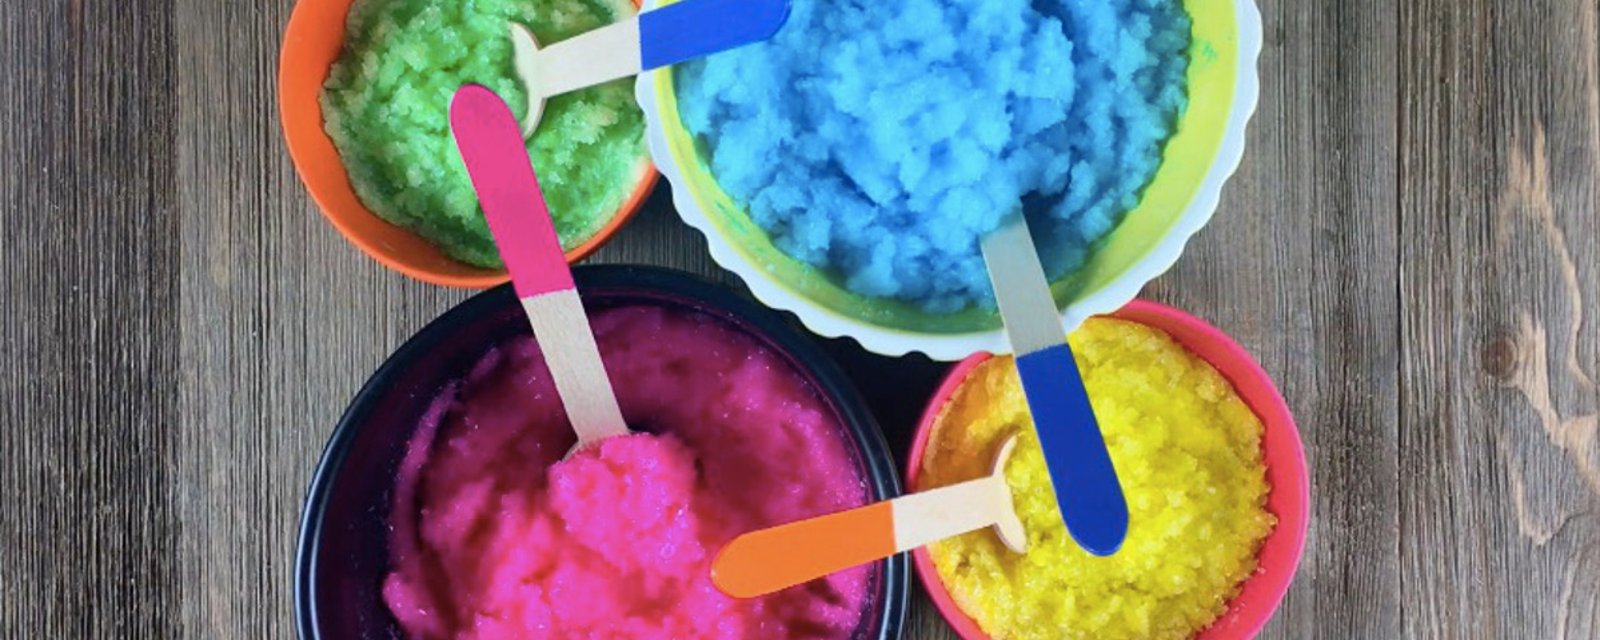 Préparez 4 couleurs de pâtes différentes! Réalisez des bombes pour le bain, ultra colorées!